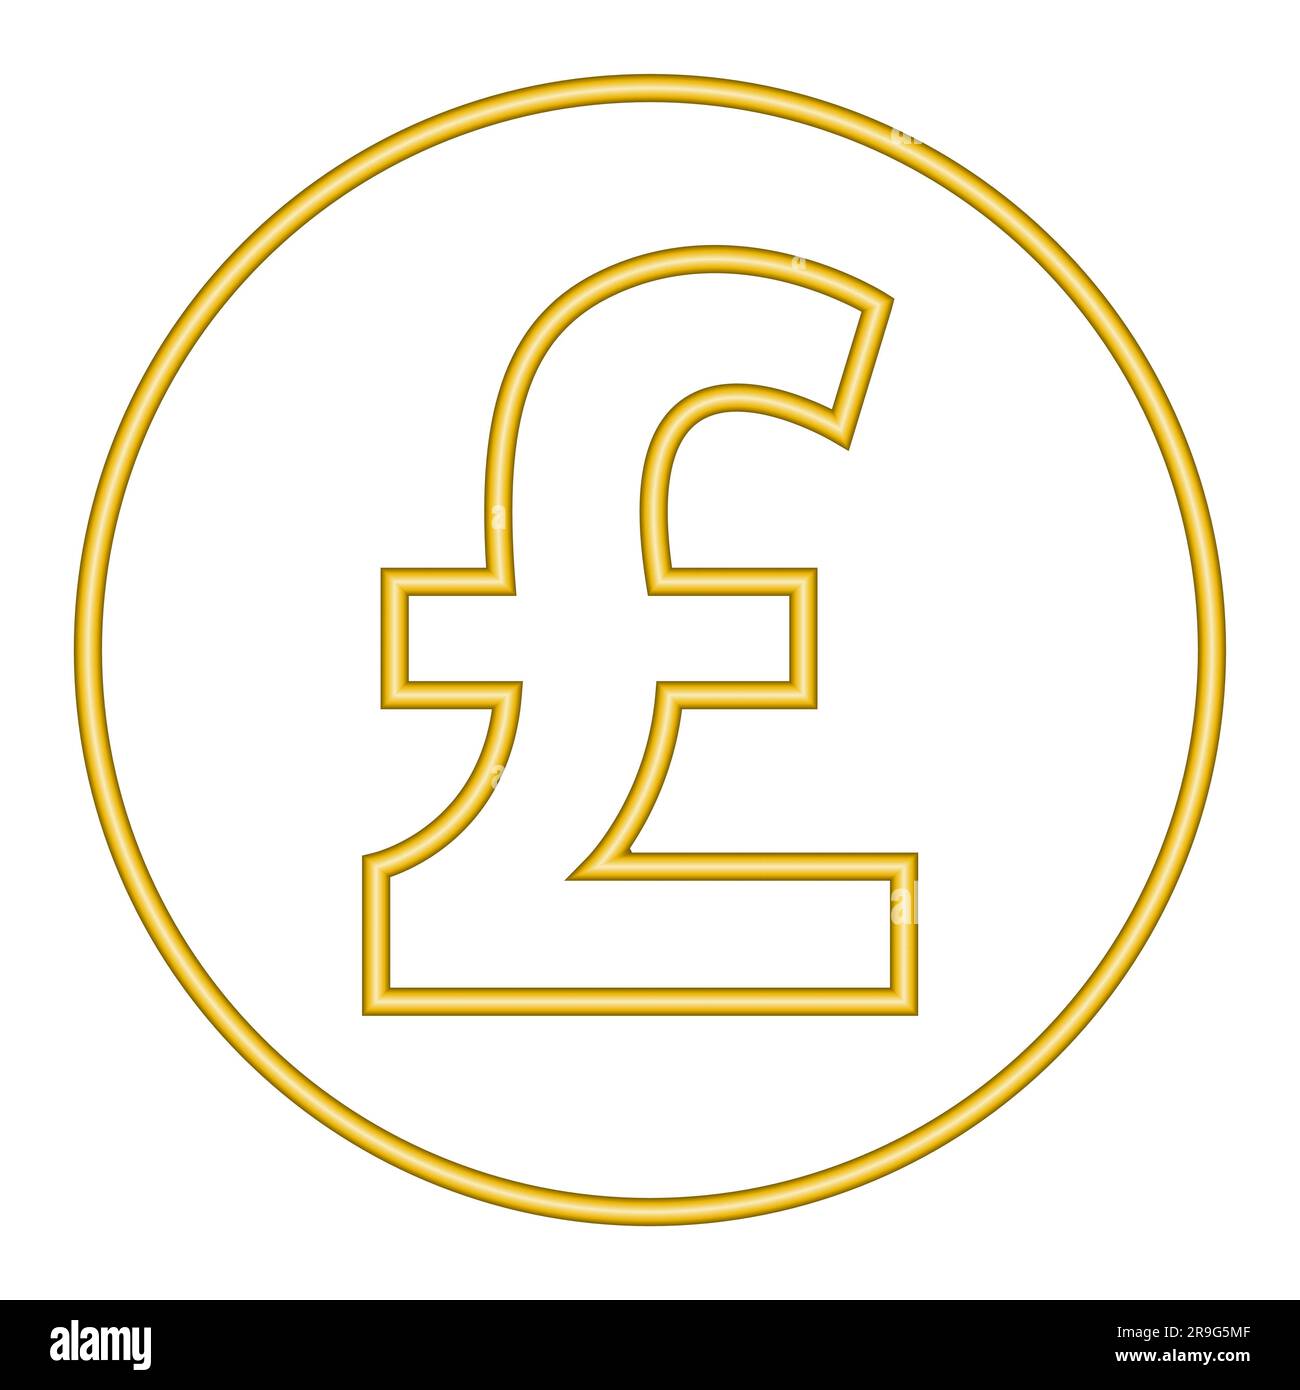 3D Pfund Sterling Goldsymbol Goldenes Münzsymbol Gelddesign Währungszeichen in goldenem Kreis Vektordarstellung isoliert auf weißem Hintergrund Stock Vektor